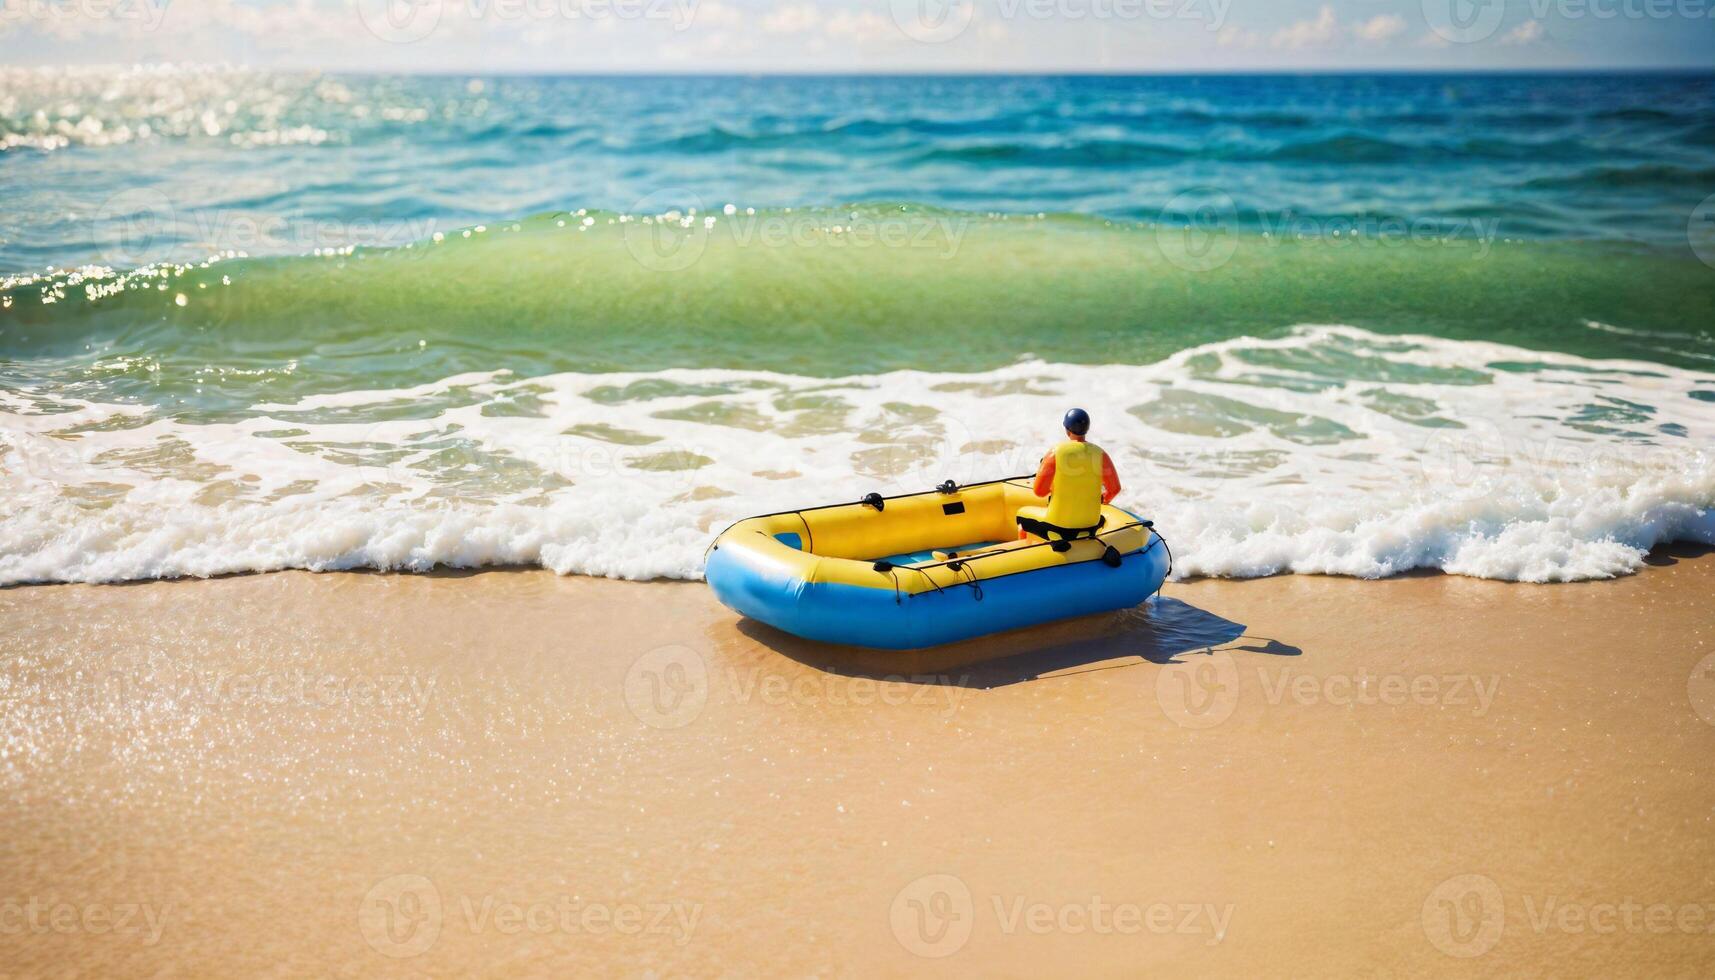 miniatura escena de balsa rescate flotador barco y arena playa isla, foto